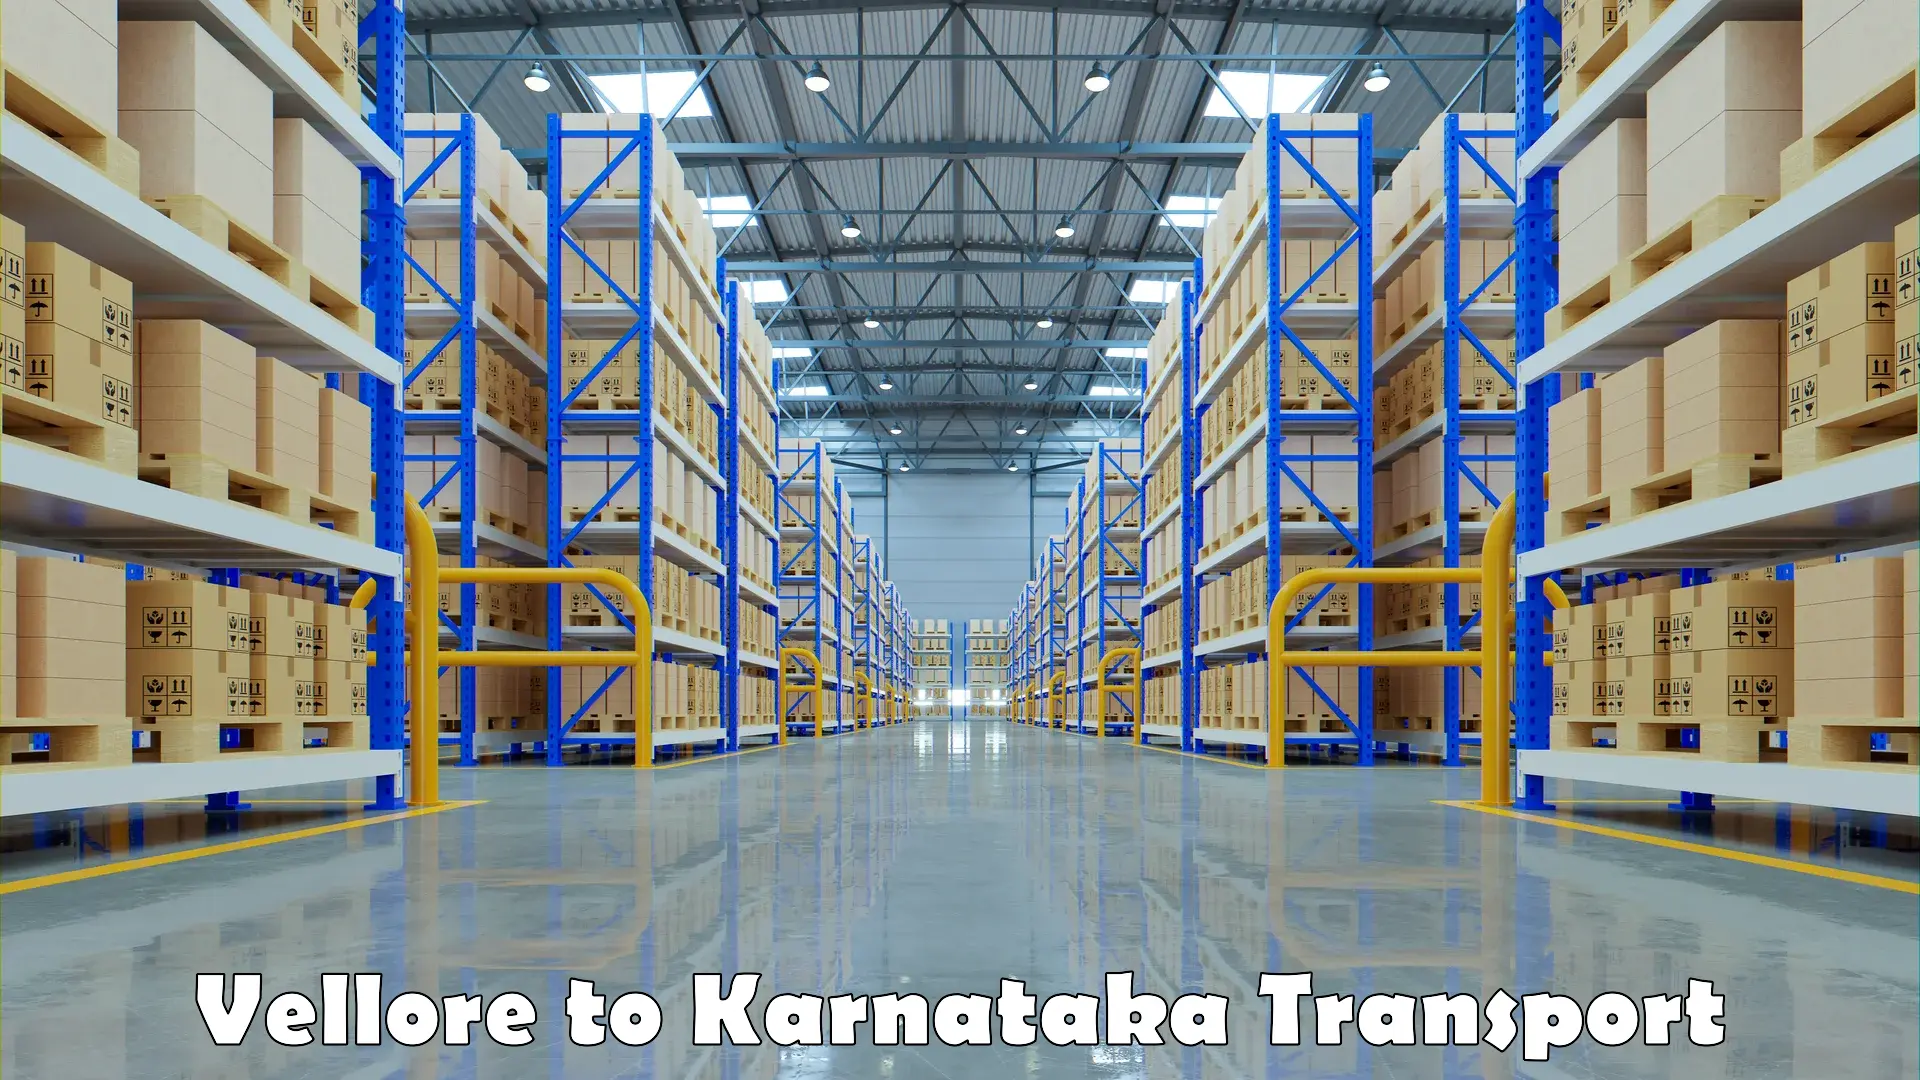 Truck transport companies in India Vellore to Karnataka